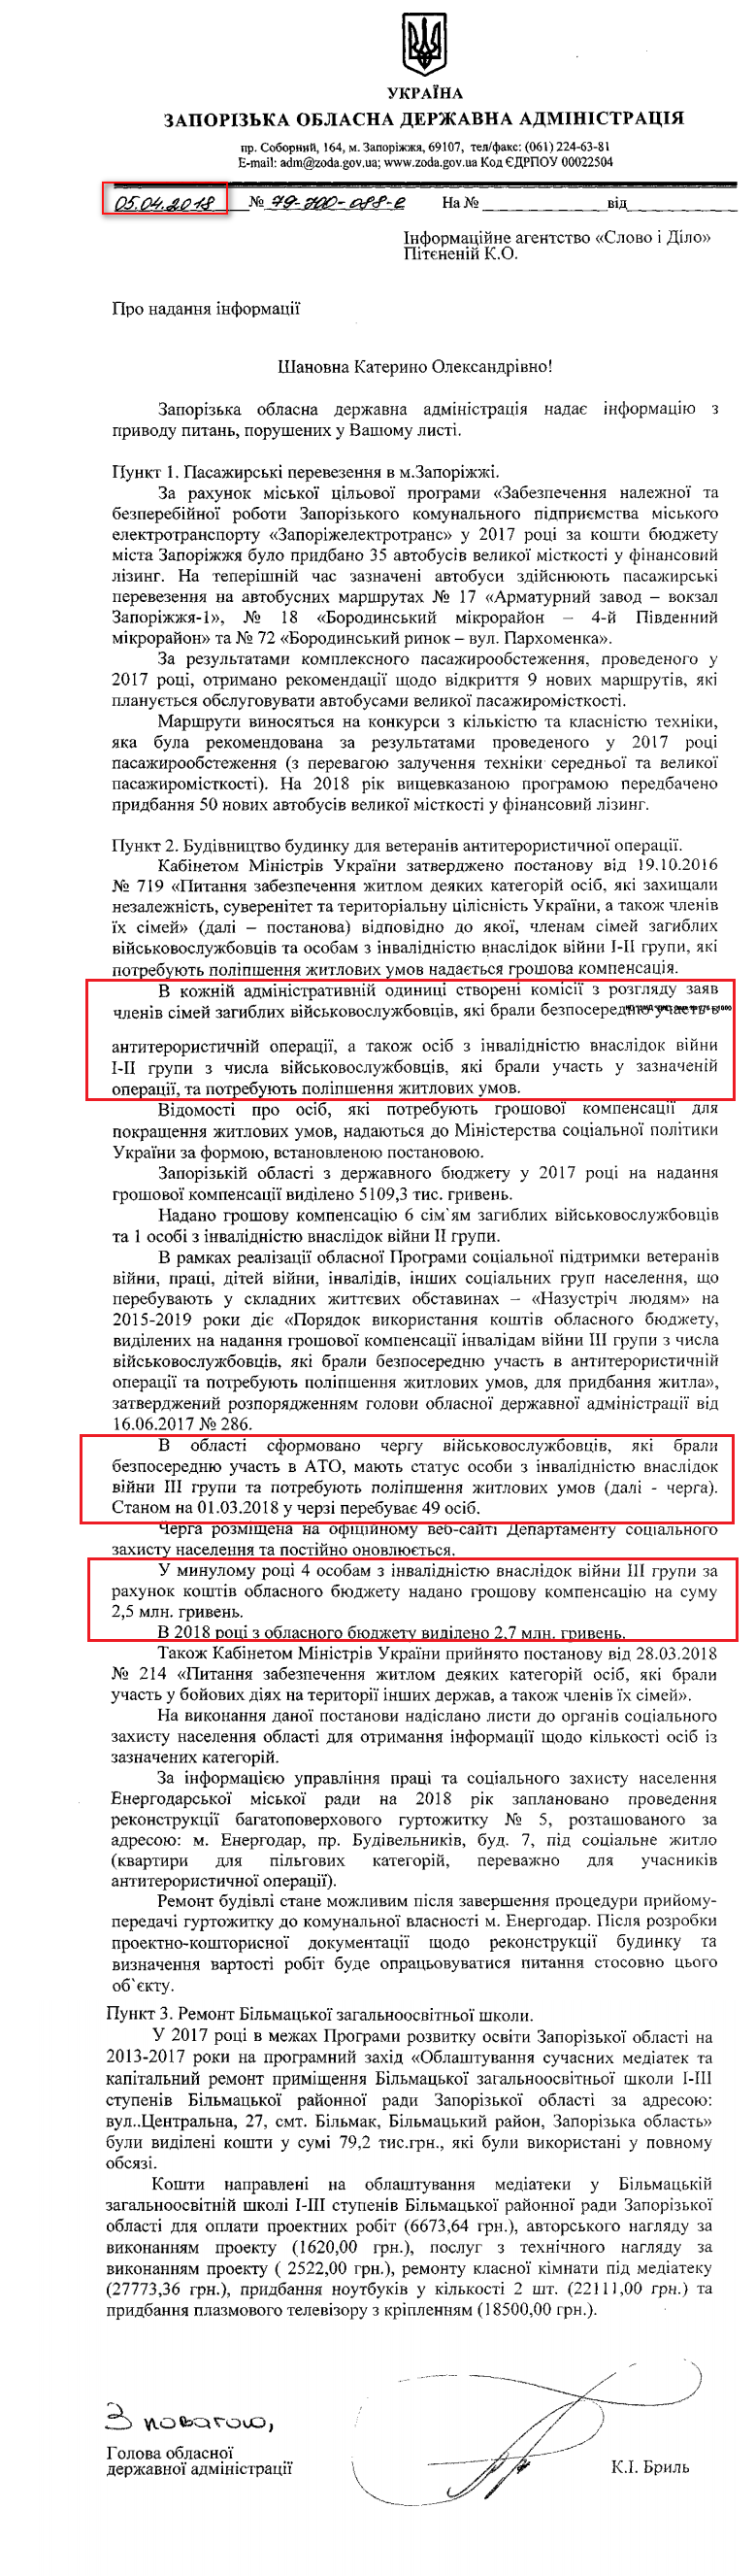 Лист Запорізької обласної державної адміністрації від 5 квітня 2018 року